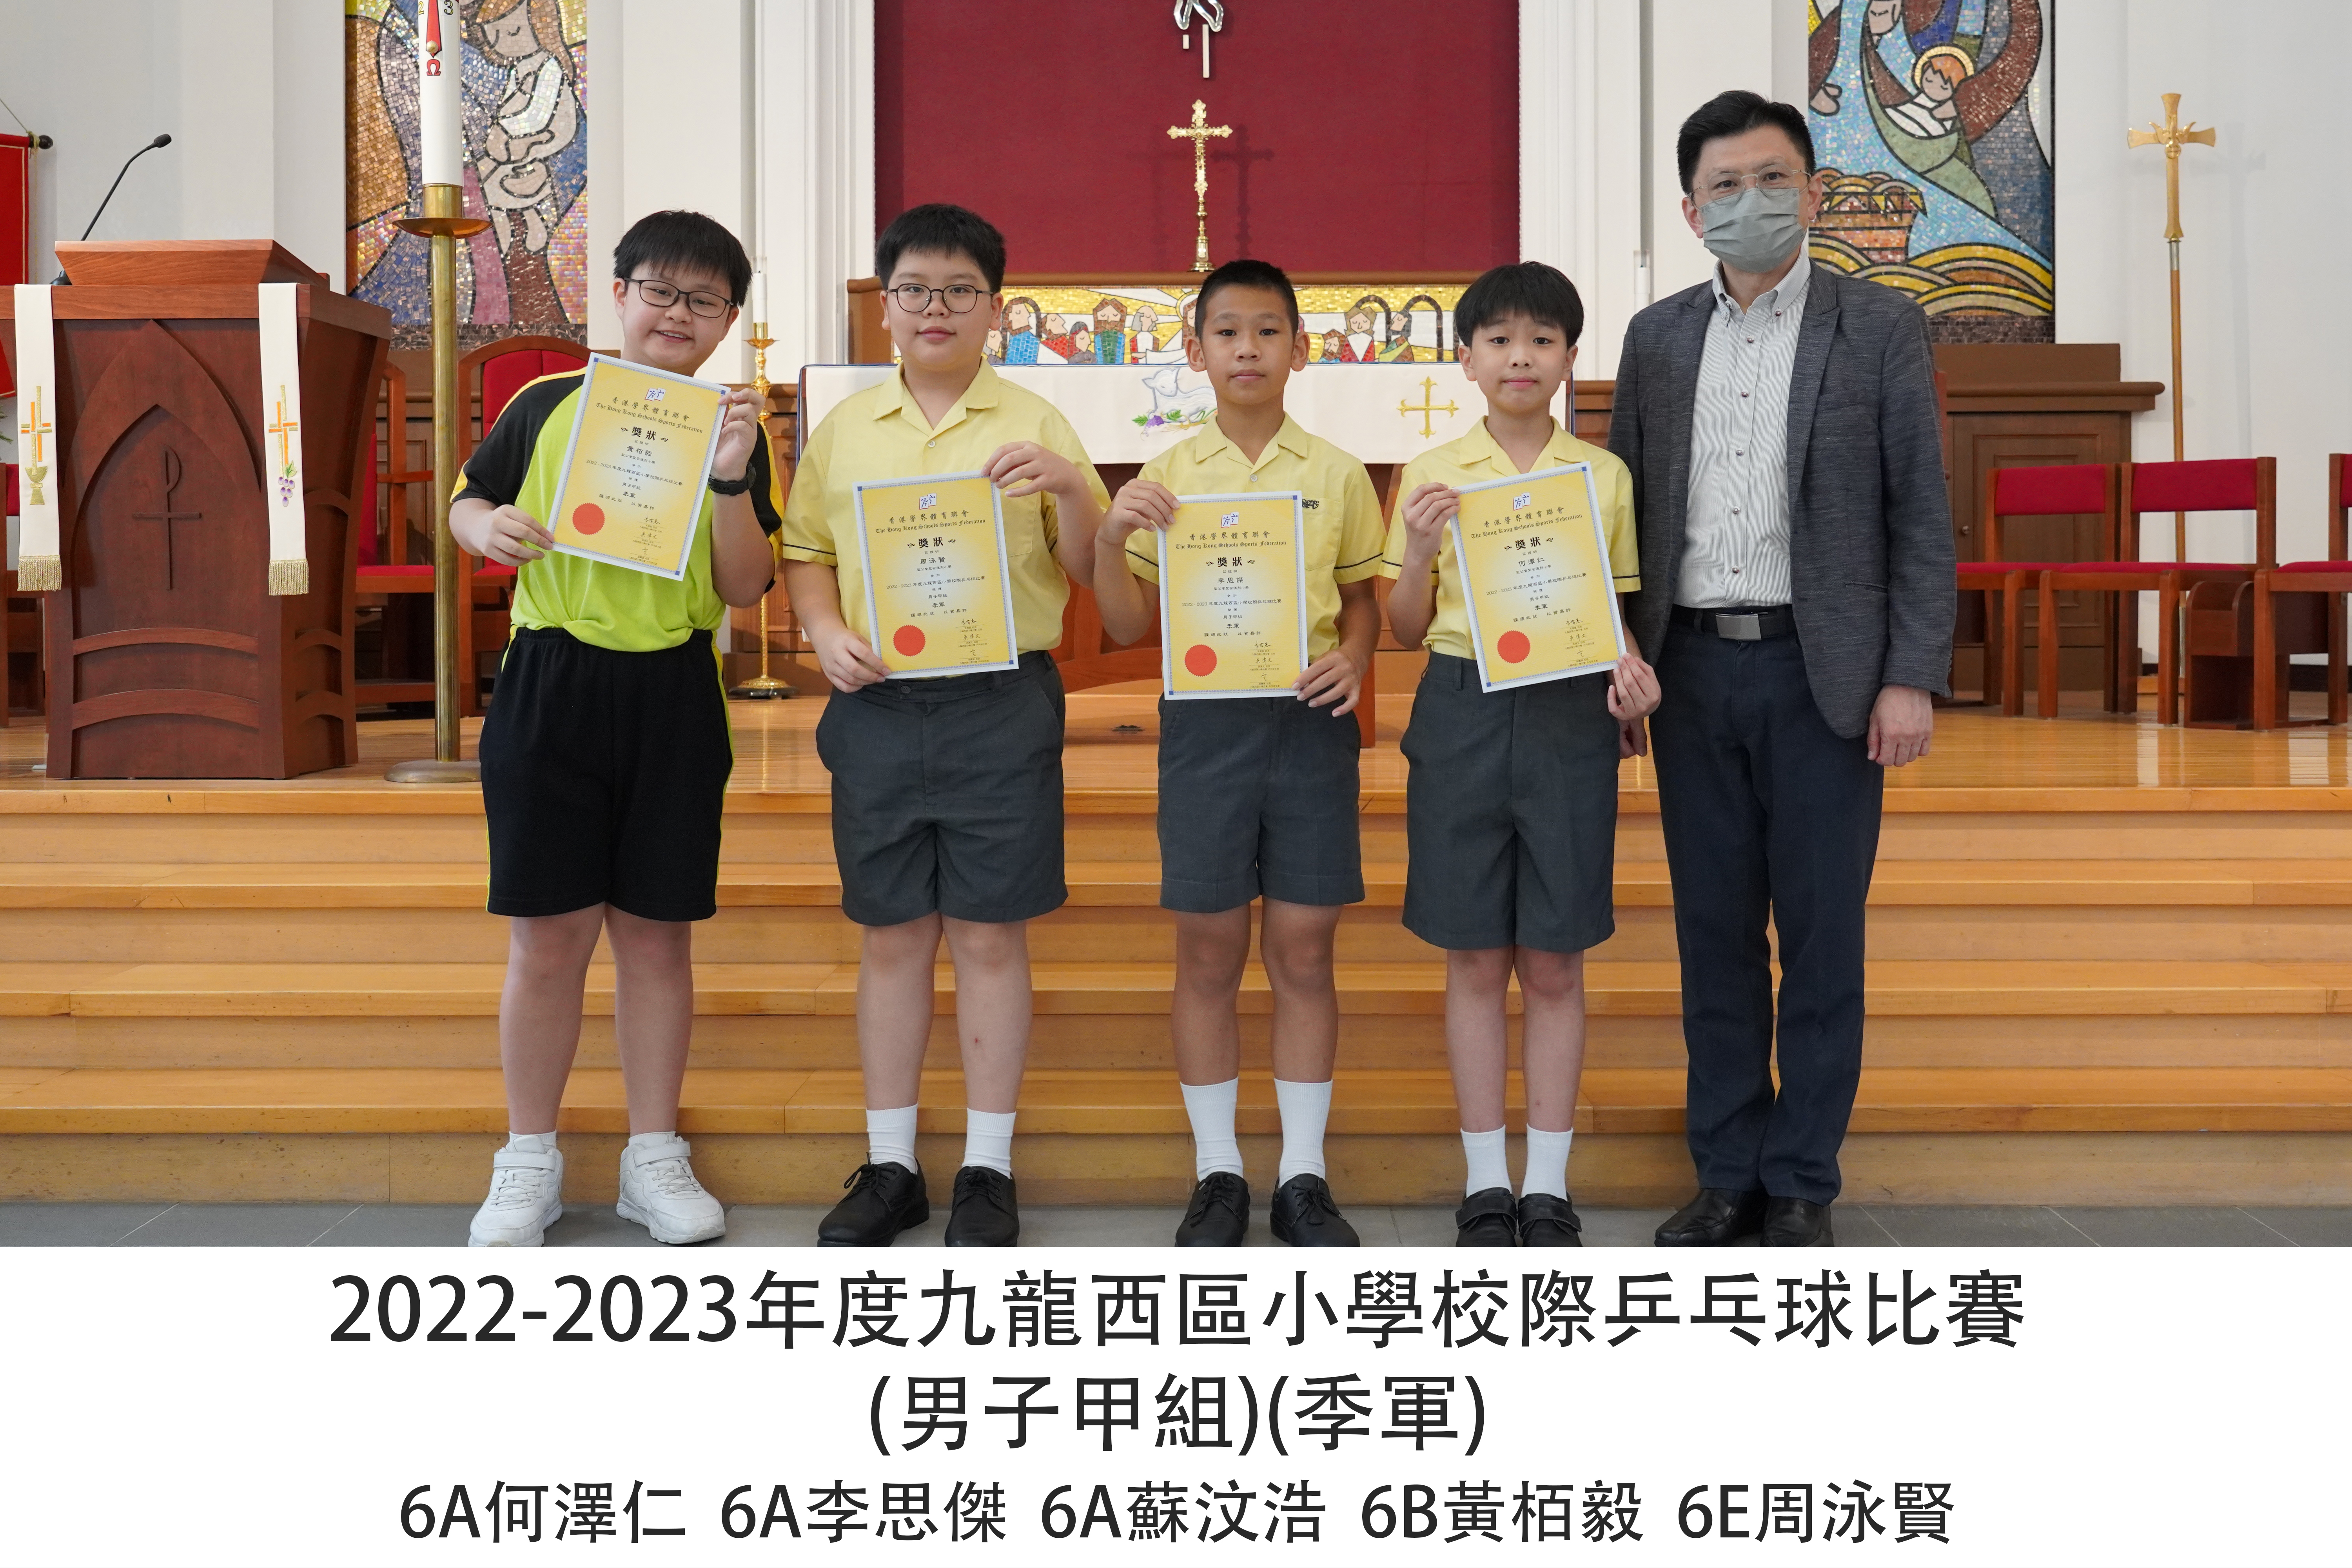 2022-2023年度九龍西區小學校際乒乓球比賽 (男子甲組)(季軍)